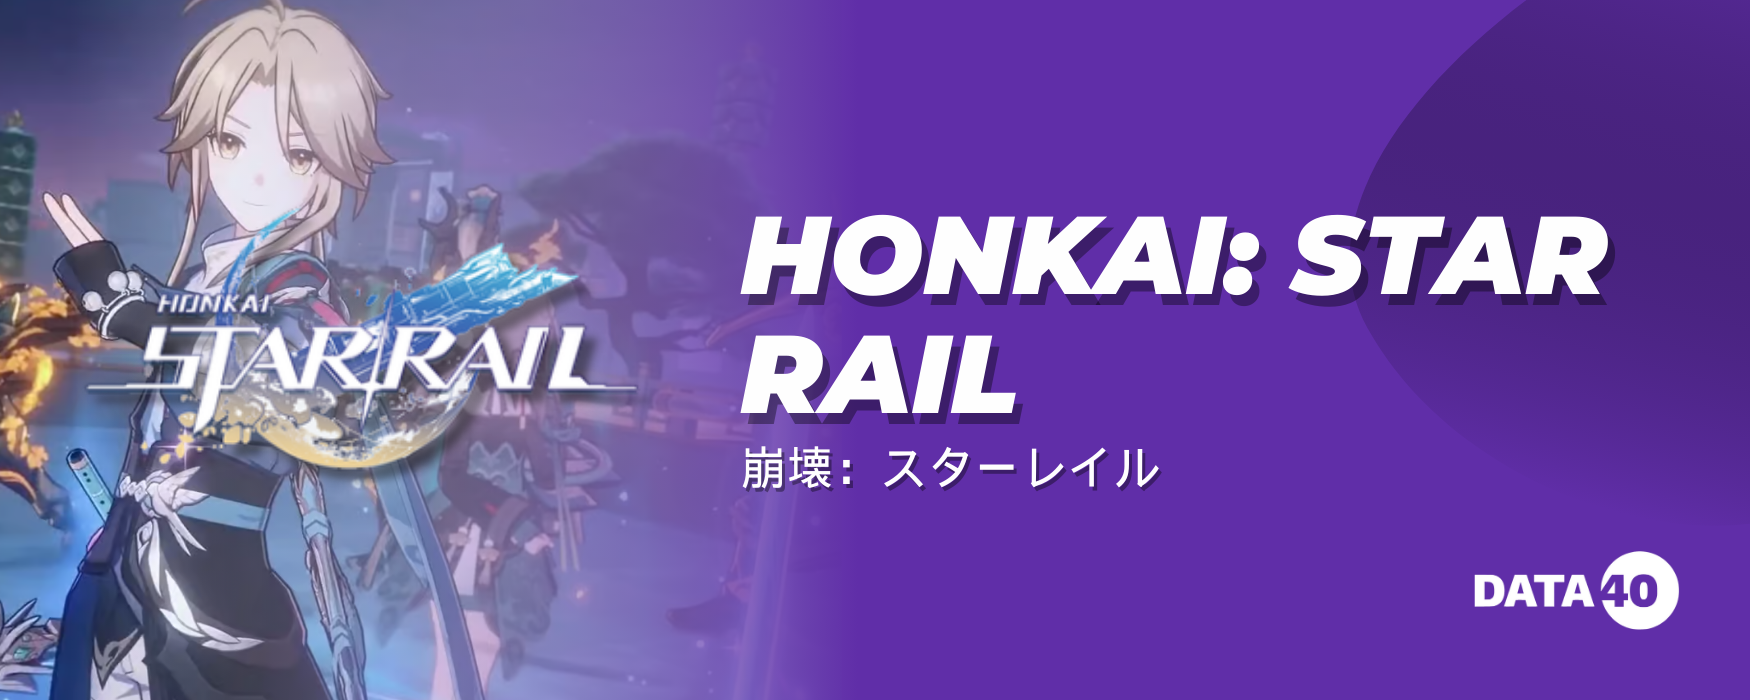 Honkai_ Star Rail